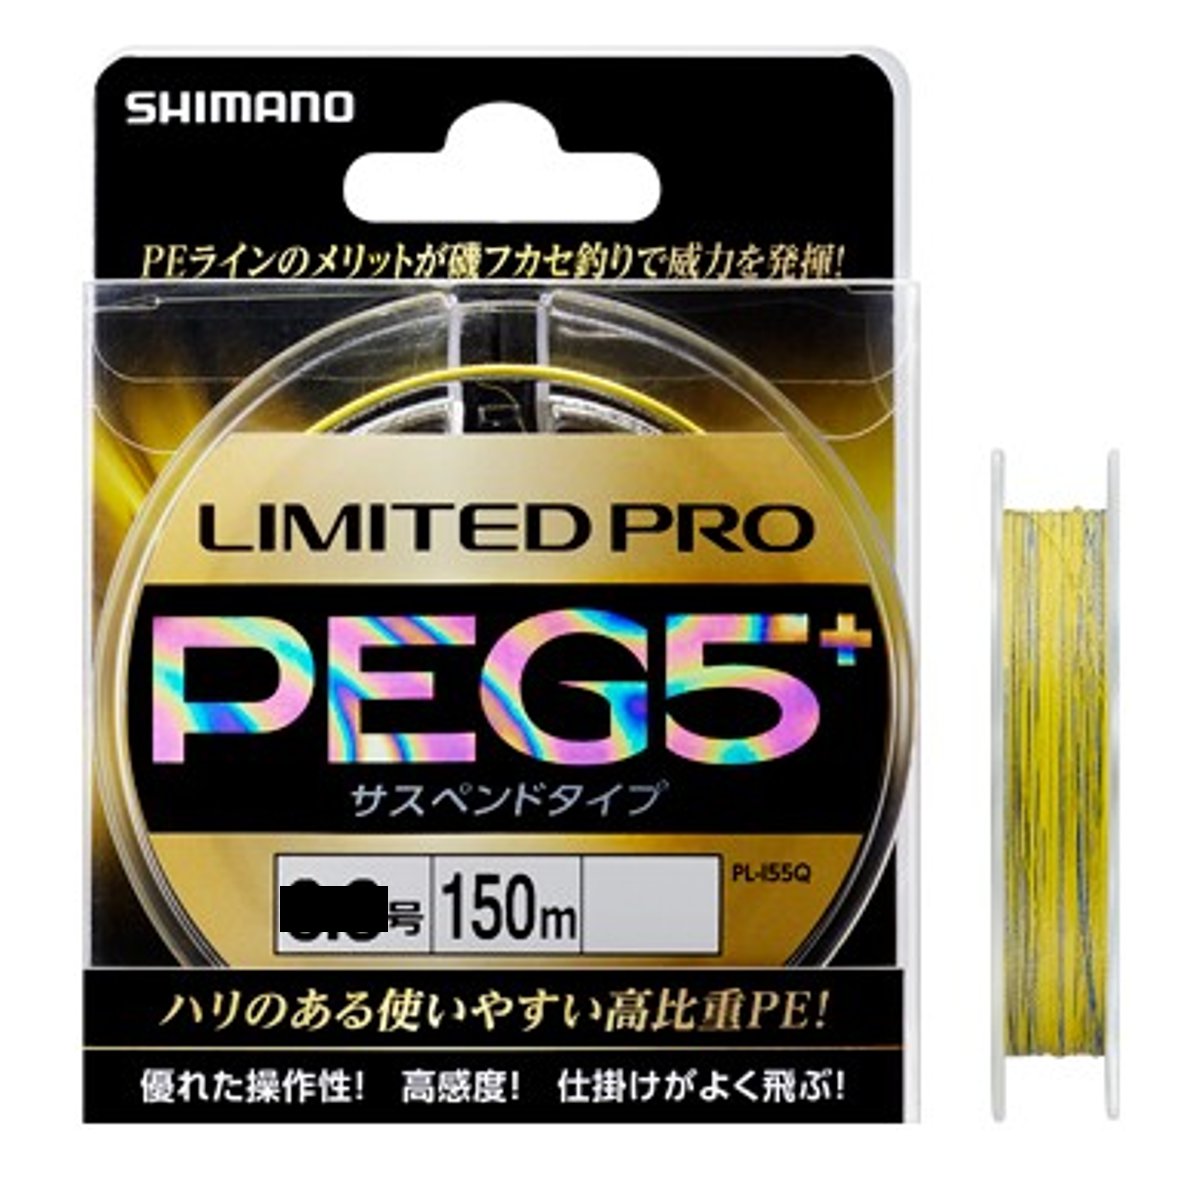 シマノ LIMITED PRO PE G5+ サスペンド PL-I55Q 0.8号 イエロー